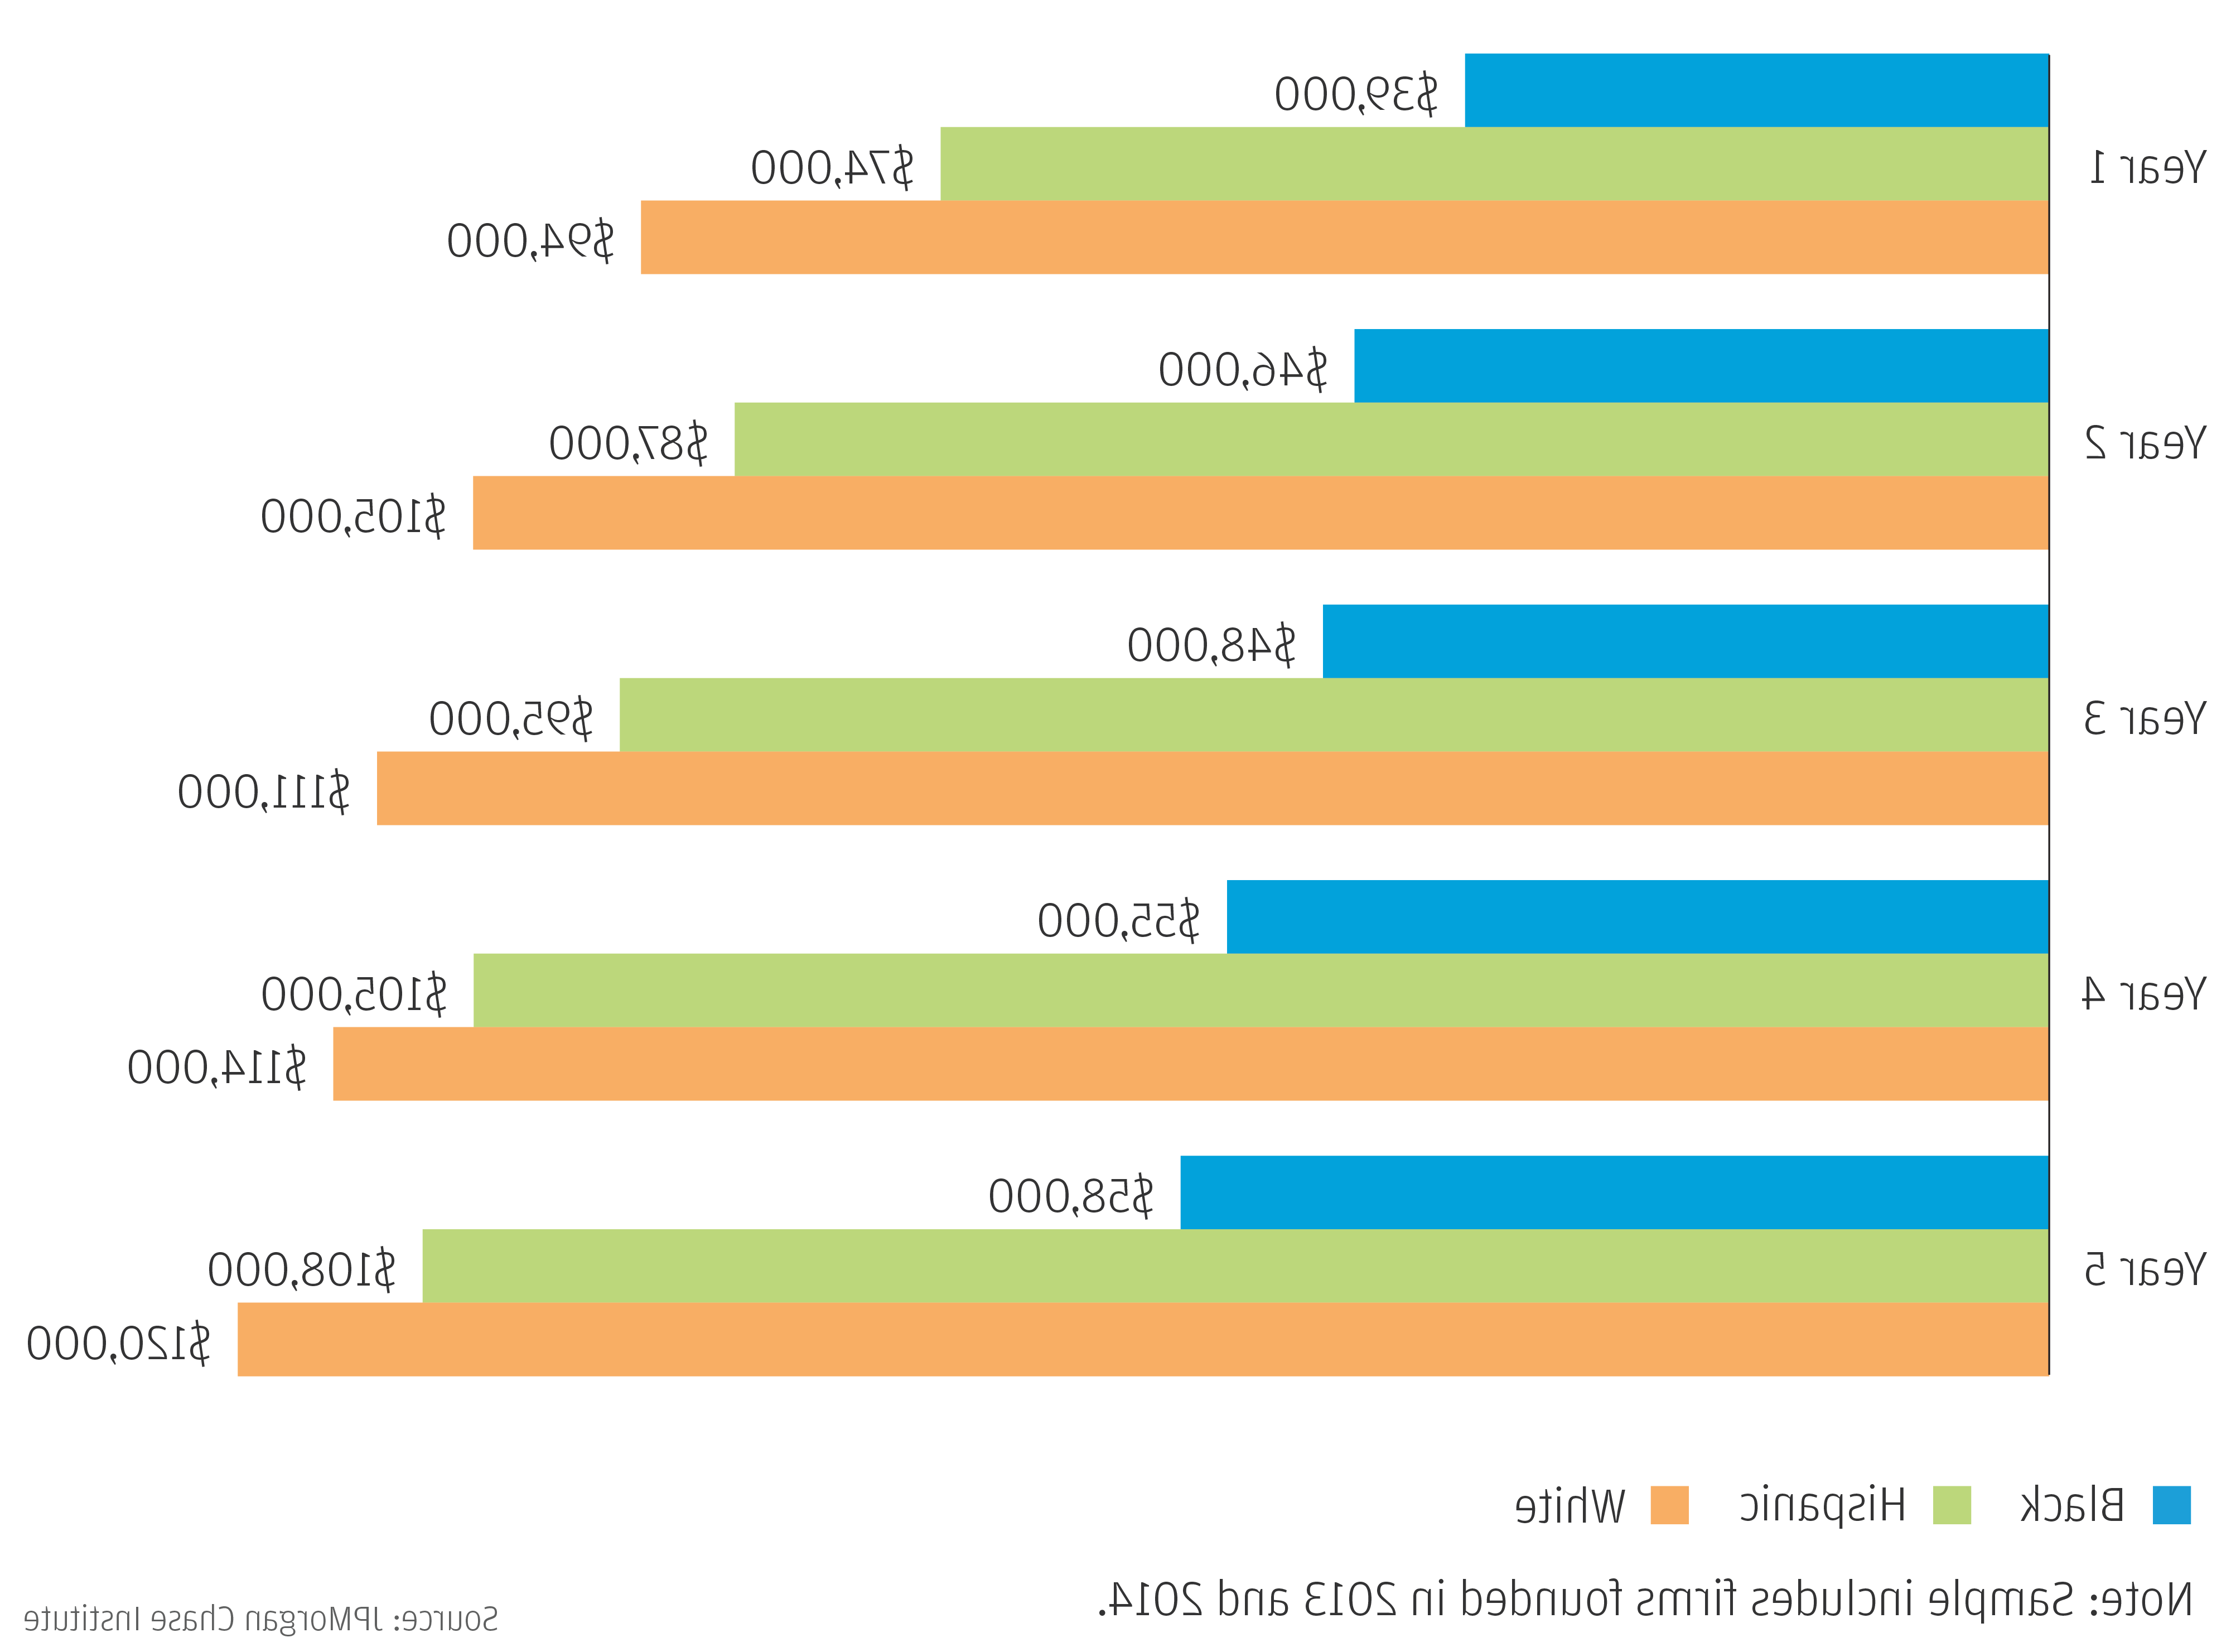 柱状图描述了2013-2014年同期小企业的收入中位数, 按船主种族划分